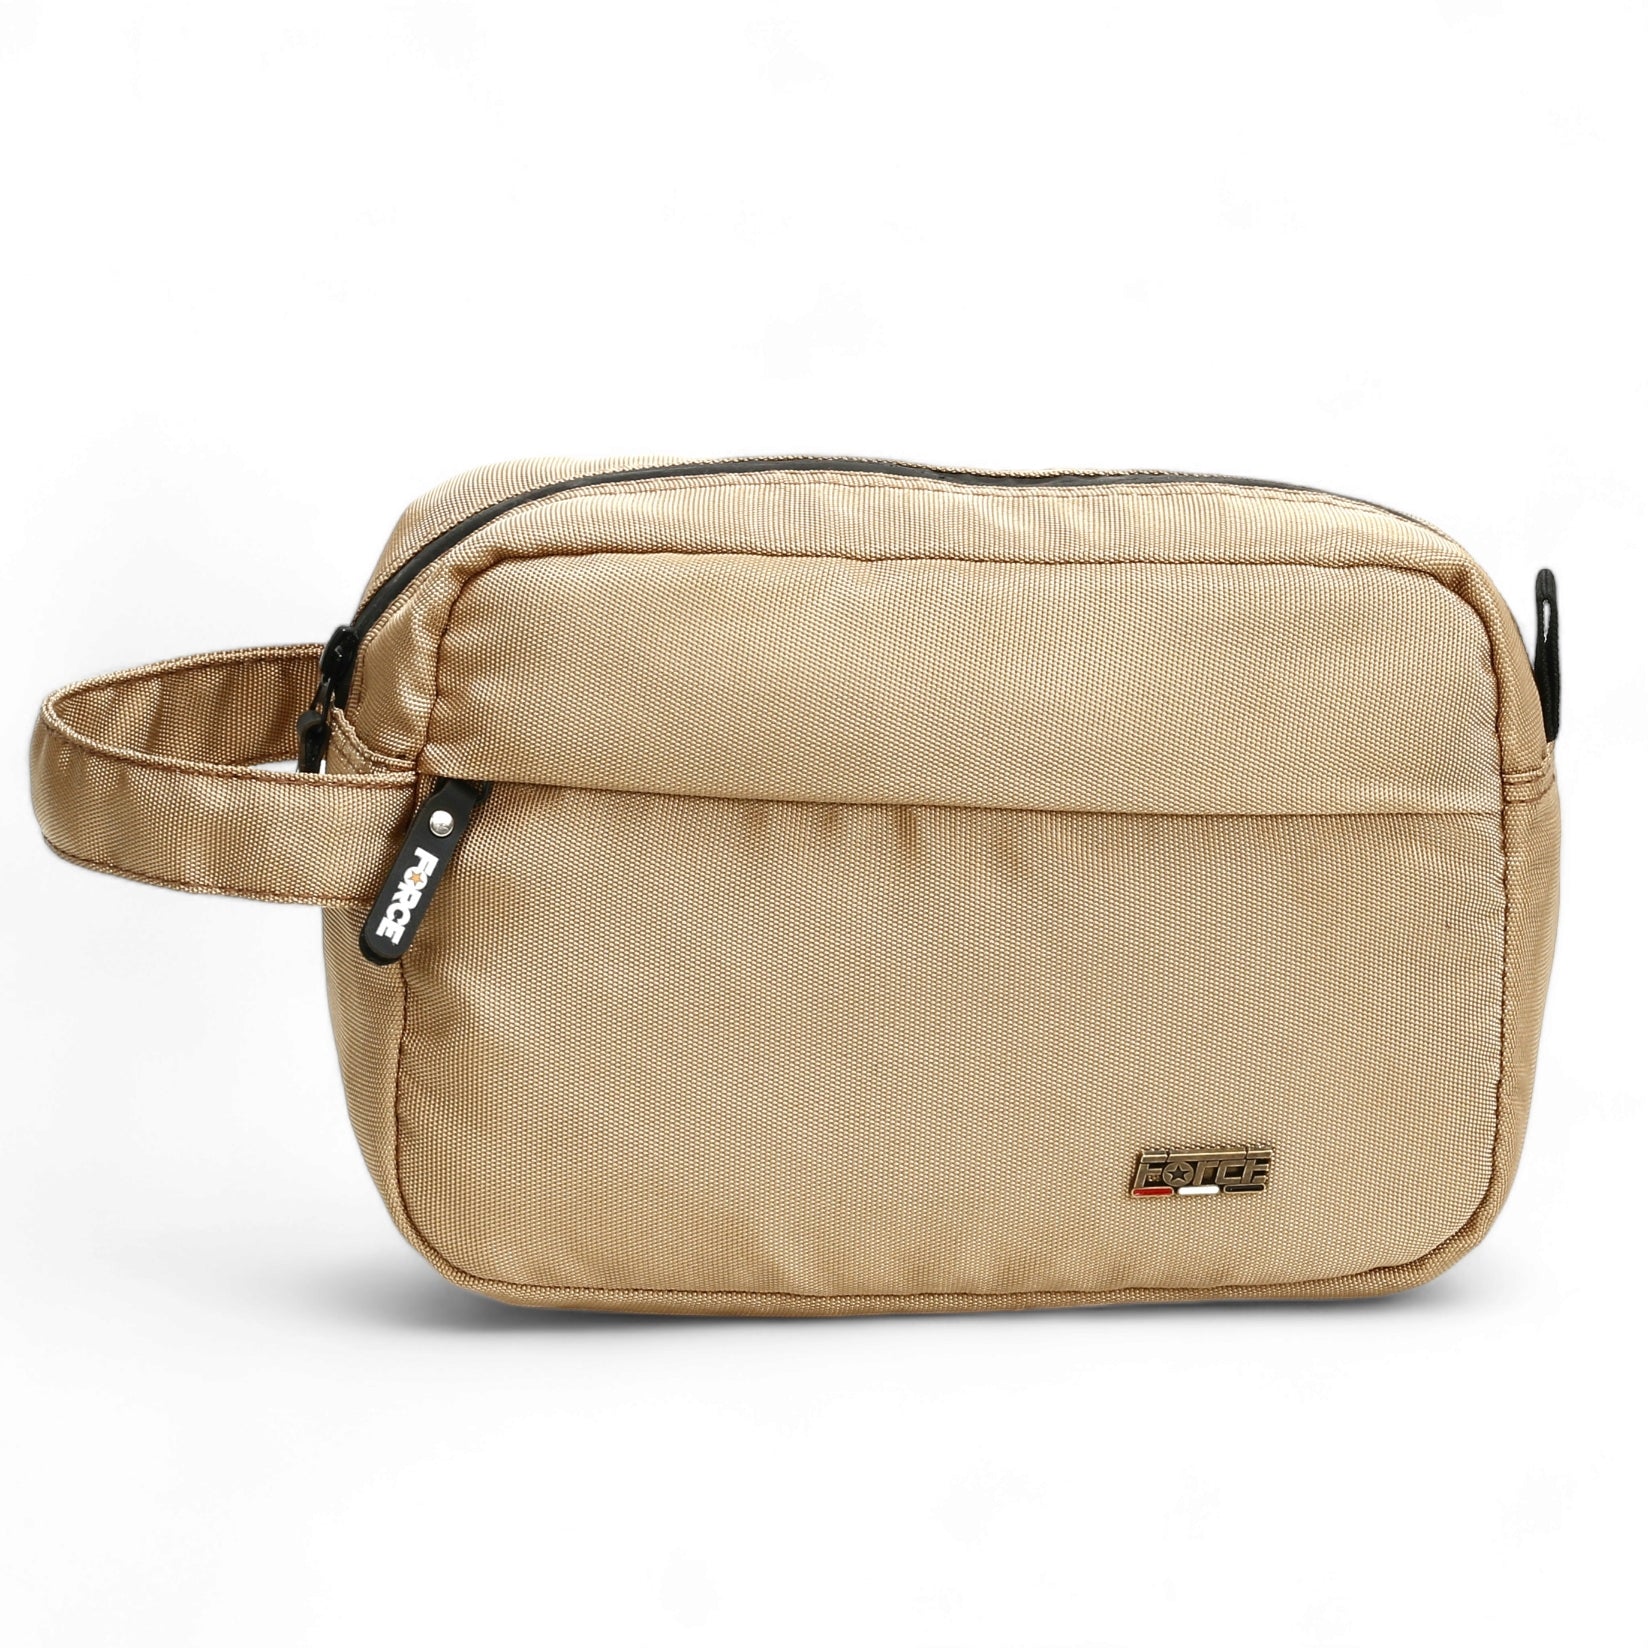 حقيبة يد للإكسسوارات وأدوات الزينة من فورس لينين - للجنسين - بيج ذهبي - FCN012